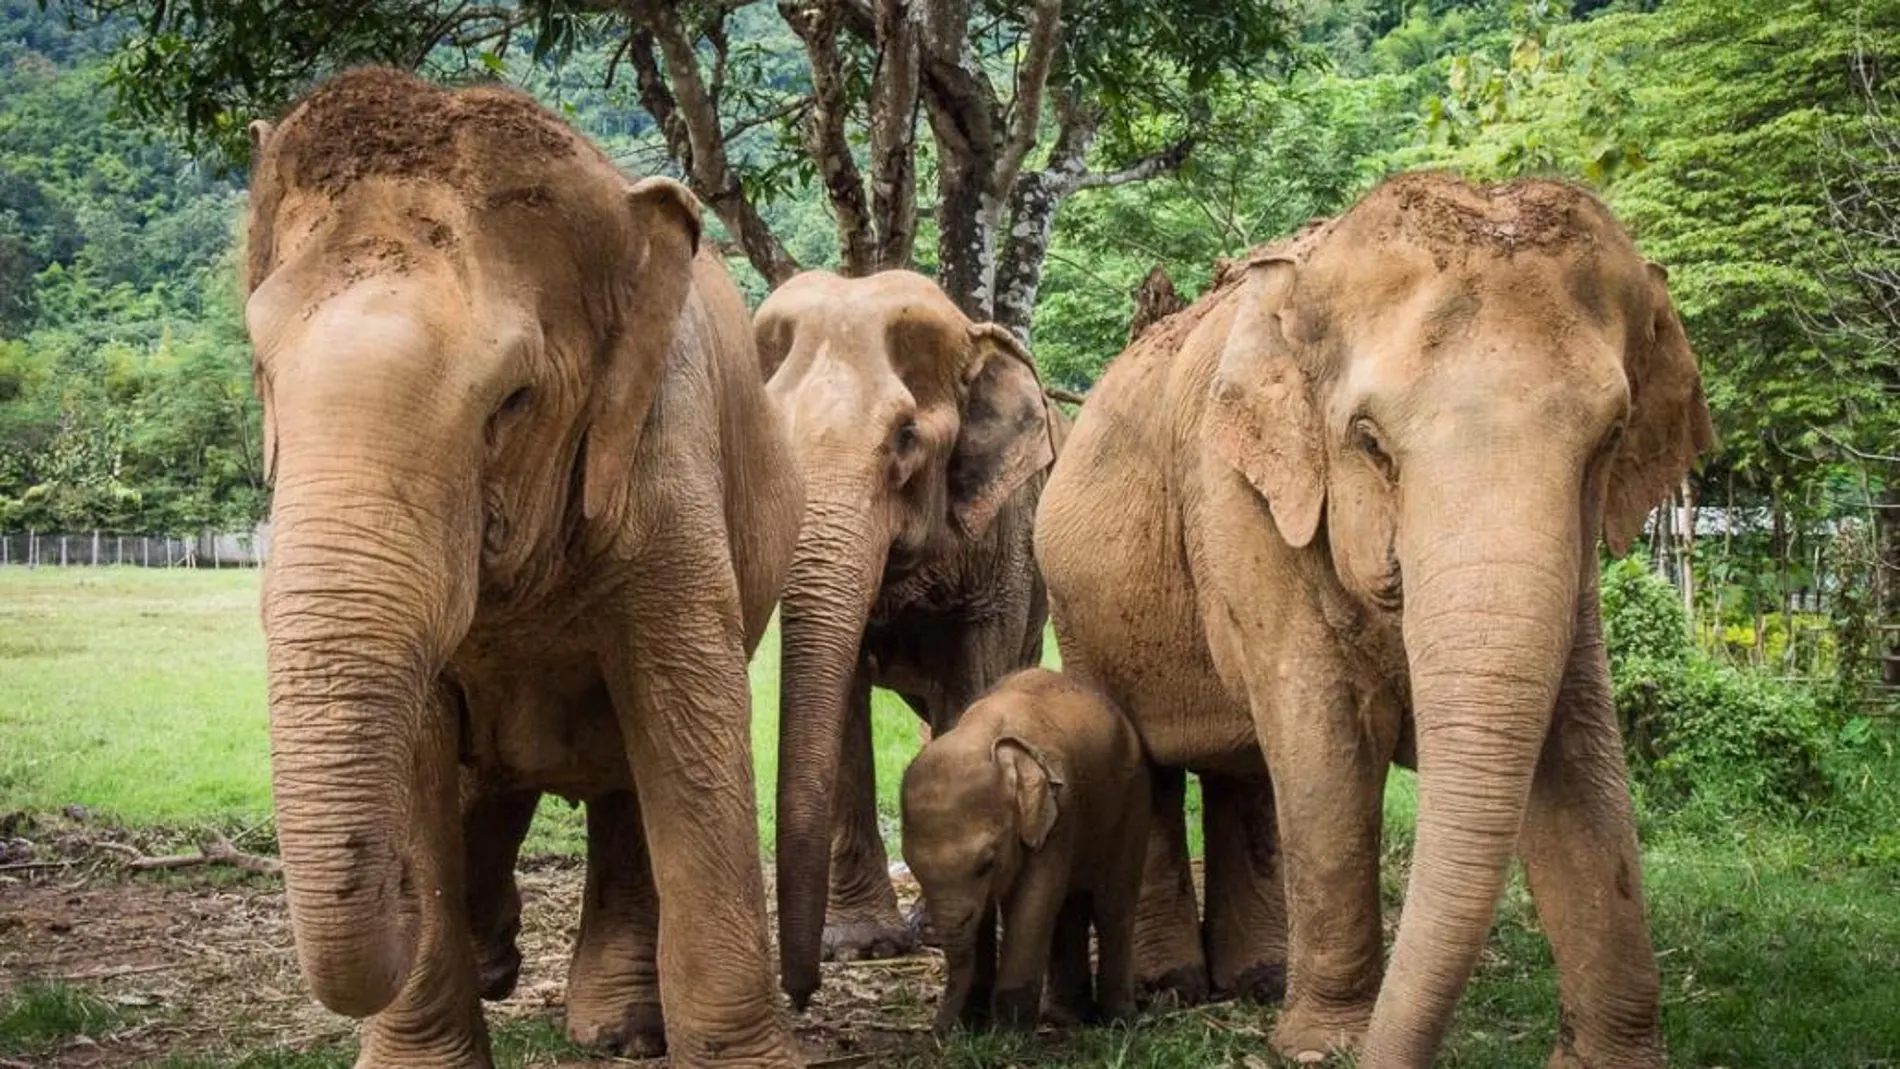 Una empleada de ACNUR en Tailandia muere arrollada por una manada de elefantes